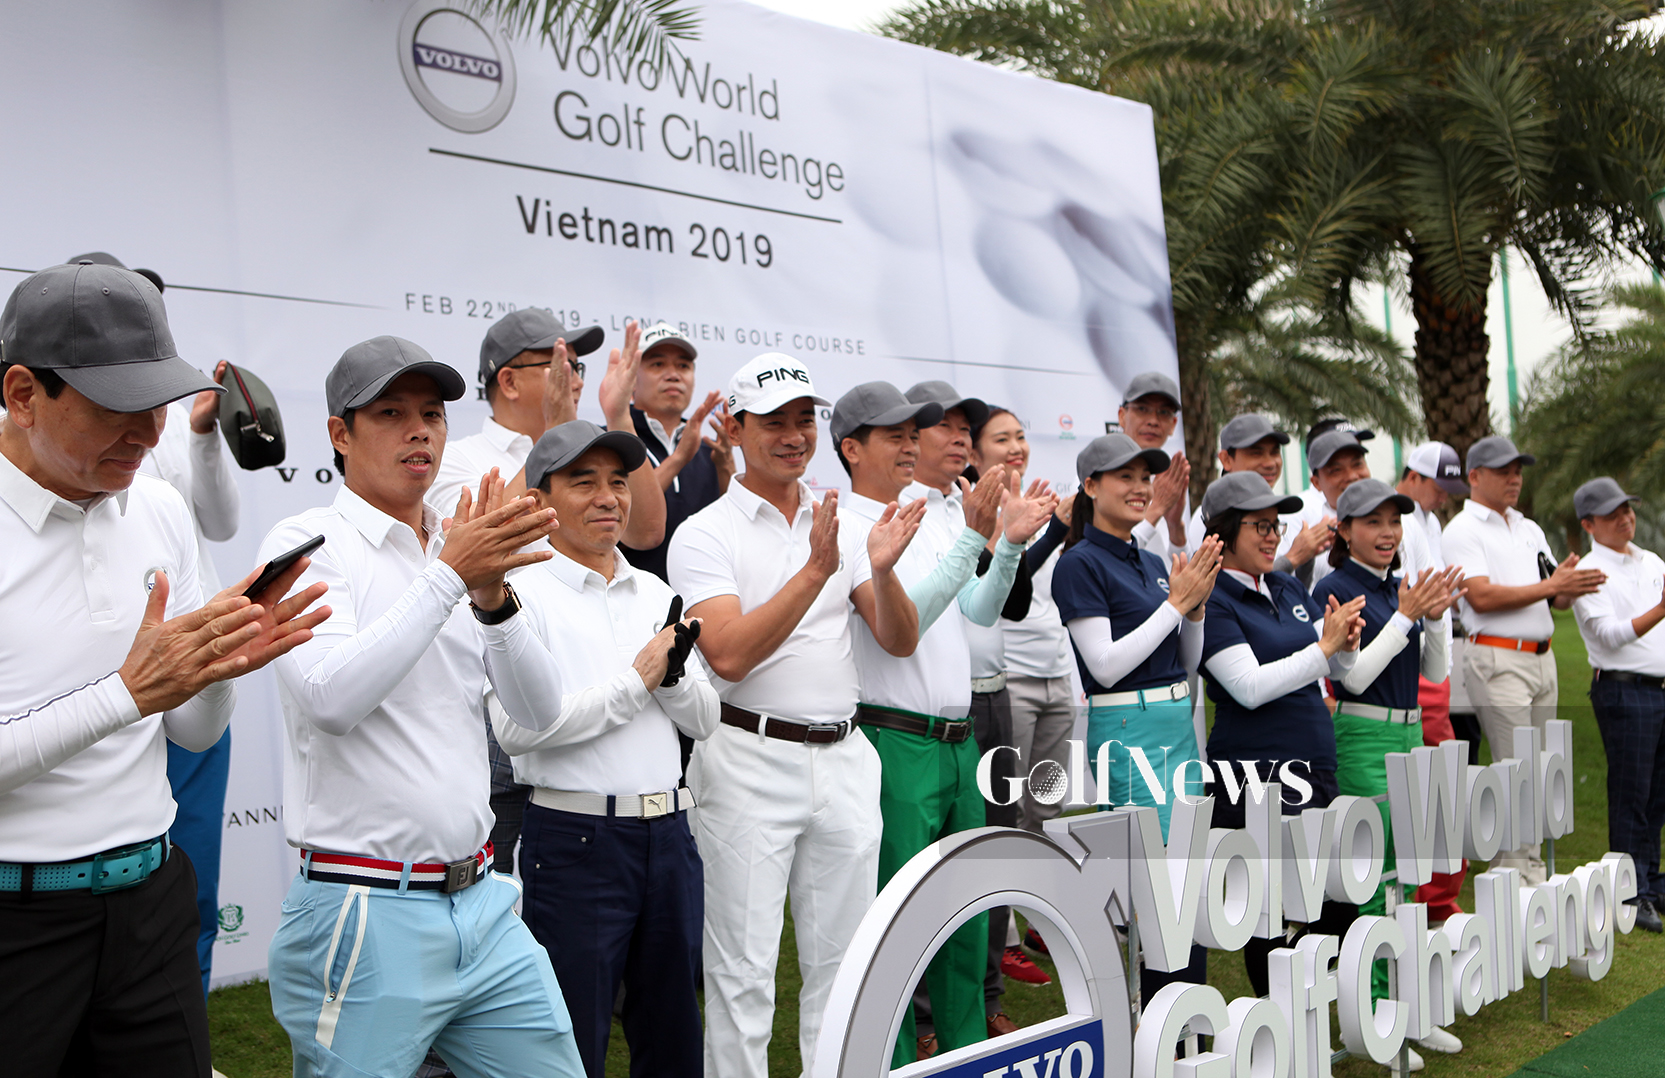 Khởi tranh vòng loại tại Hà Nội của Volvo World Golf Challenge – Vietnam 2019